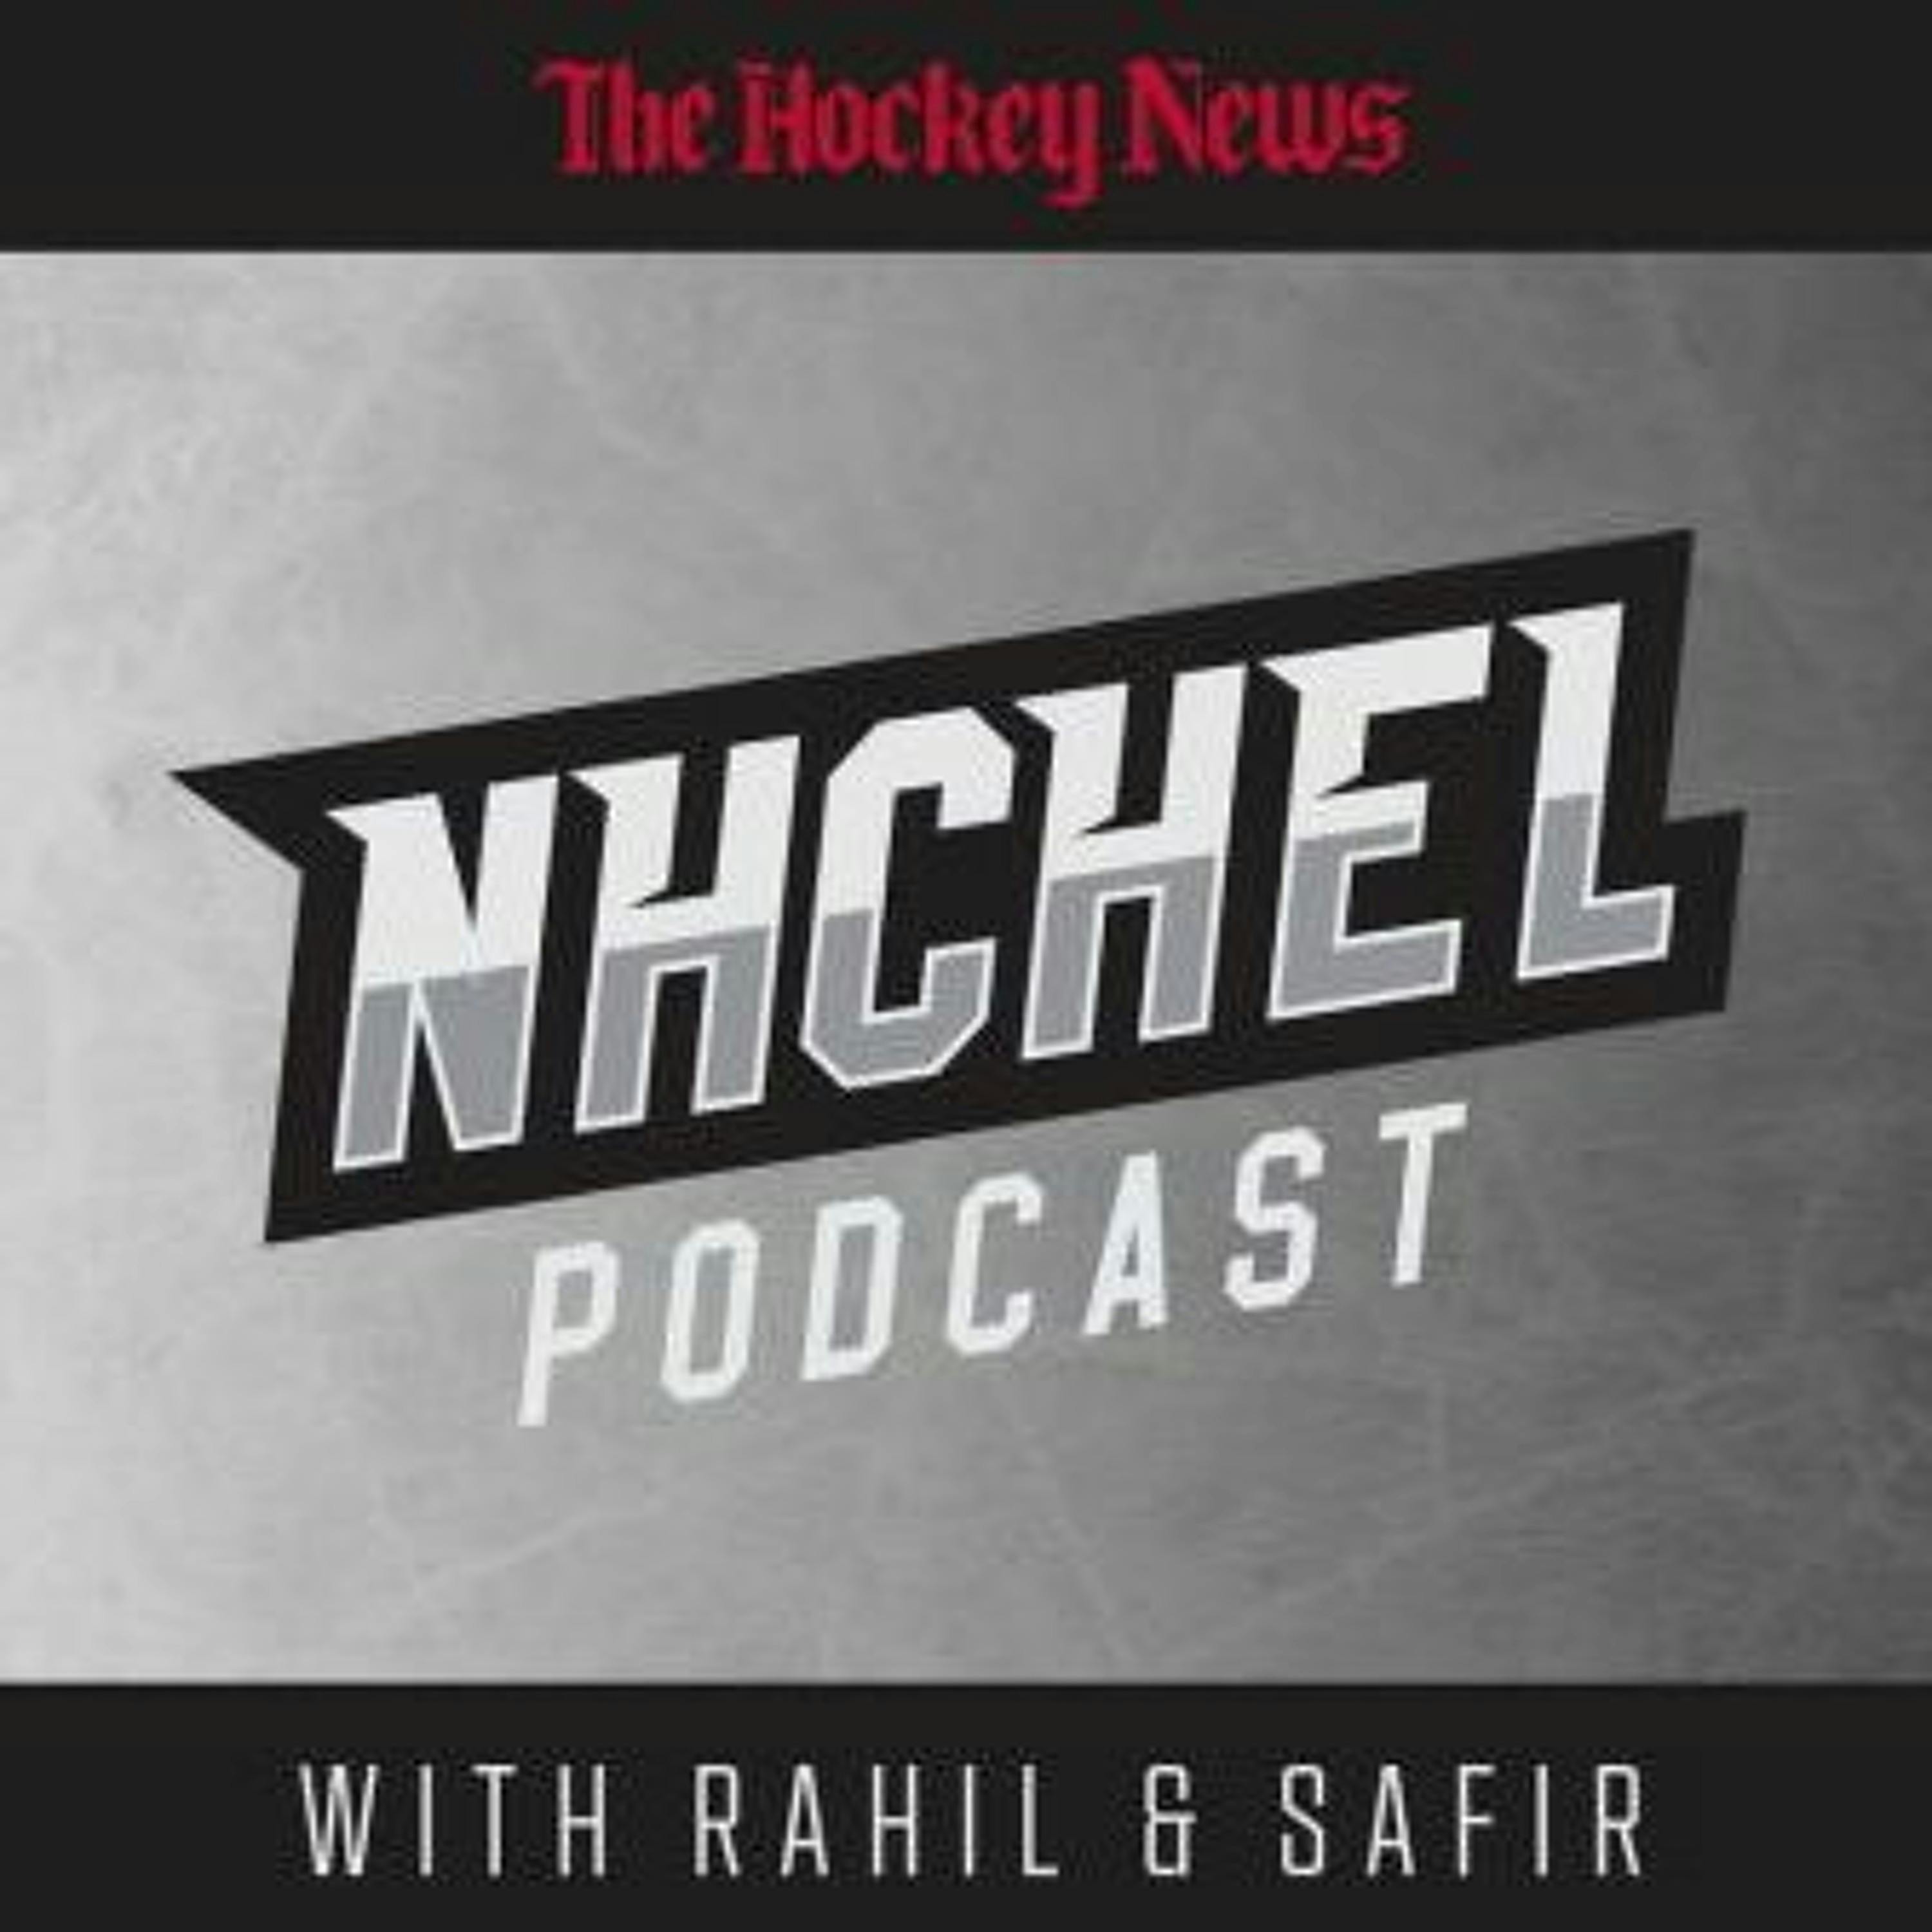 NHChel Podcast: Episode 12 – NA versus Europe